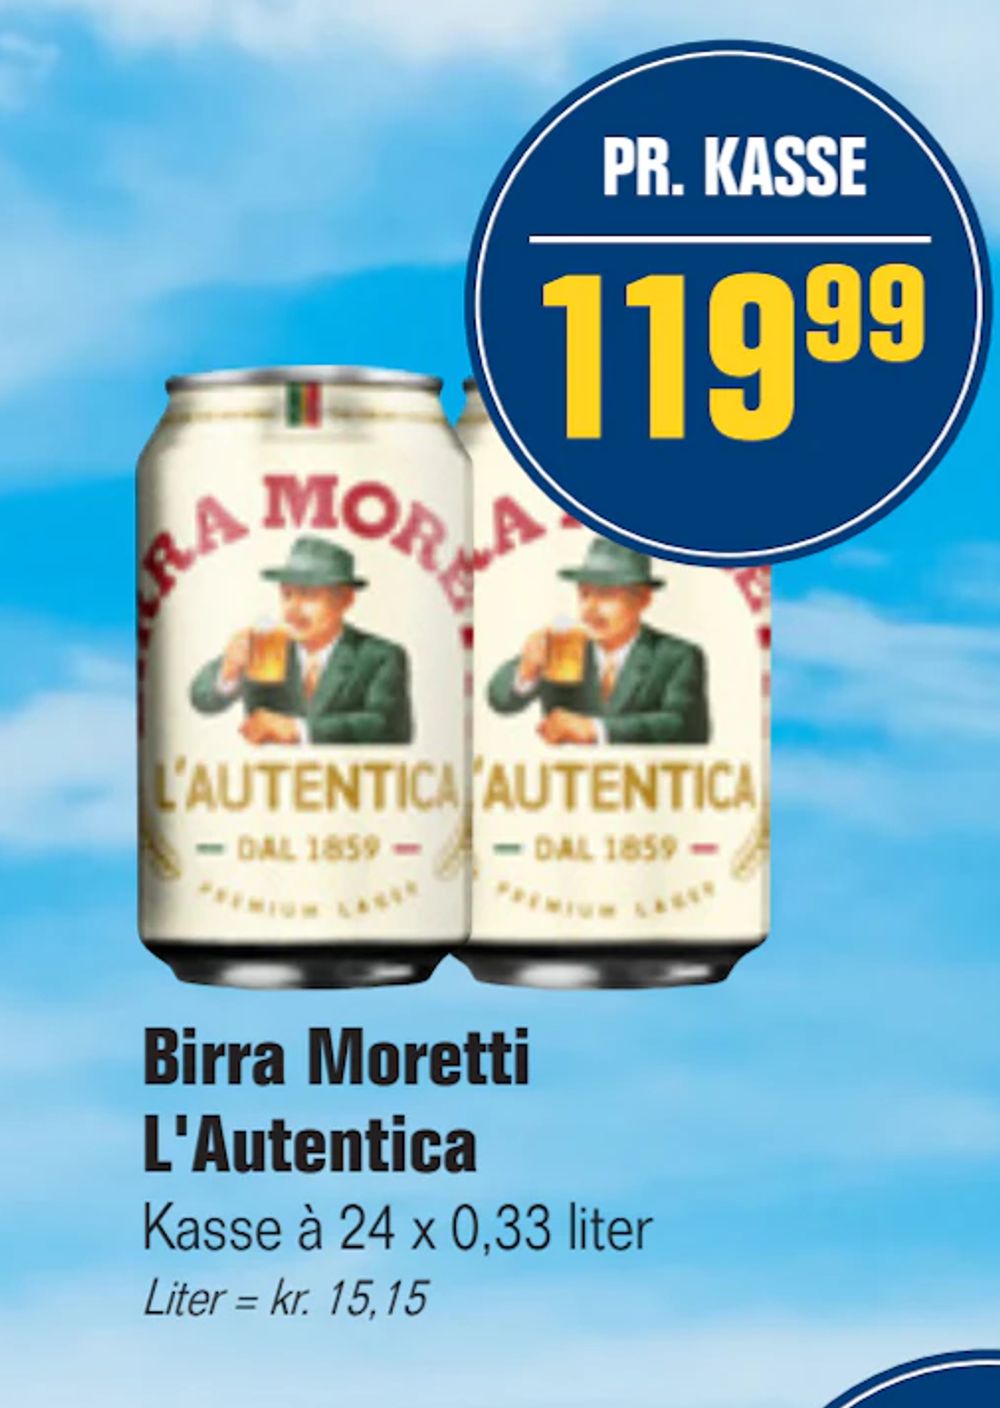 Tilbud på Birra Moretti L'Autentica fra Otto Duborg til 119,99 kr.